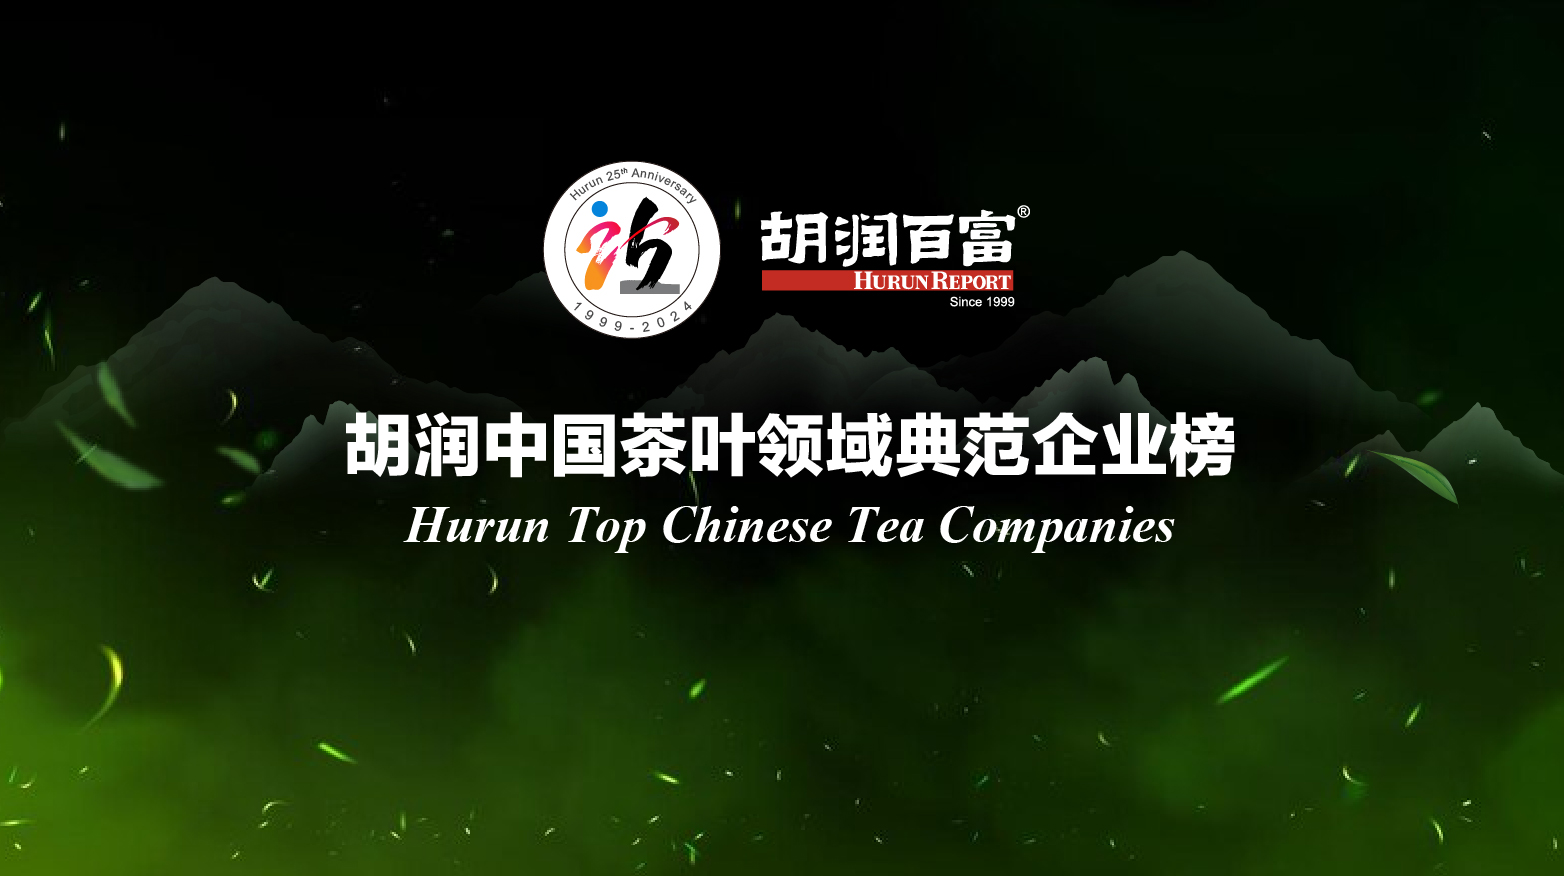 “www.366.net狮峰”入选胡润中国茶叶领域典范企业榜